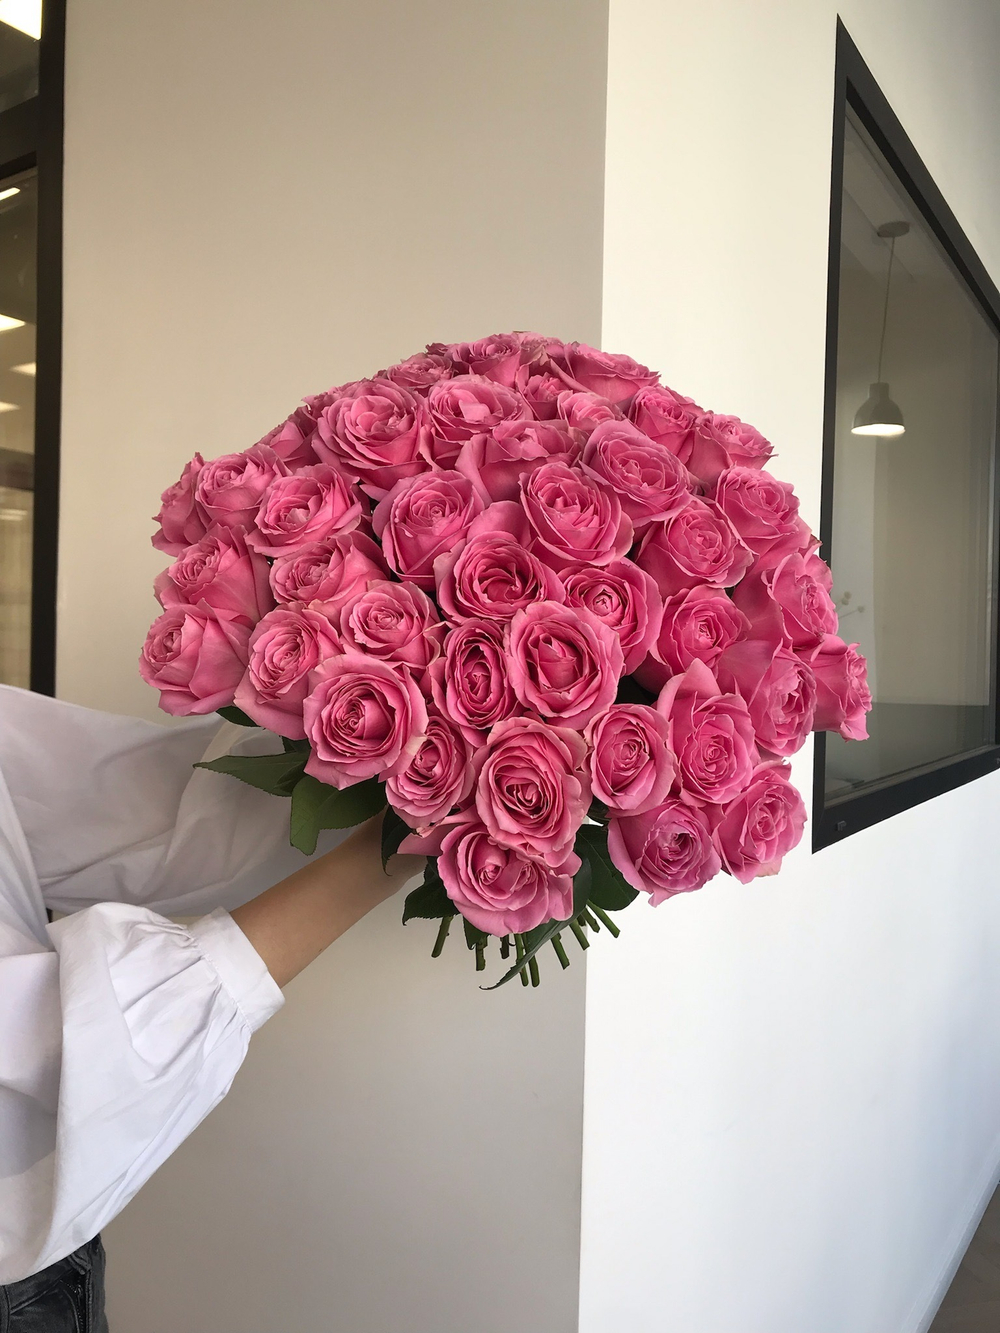 Букет из розовой розы (50см) 51 шт под ленту